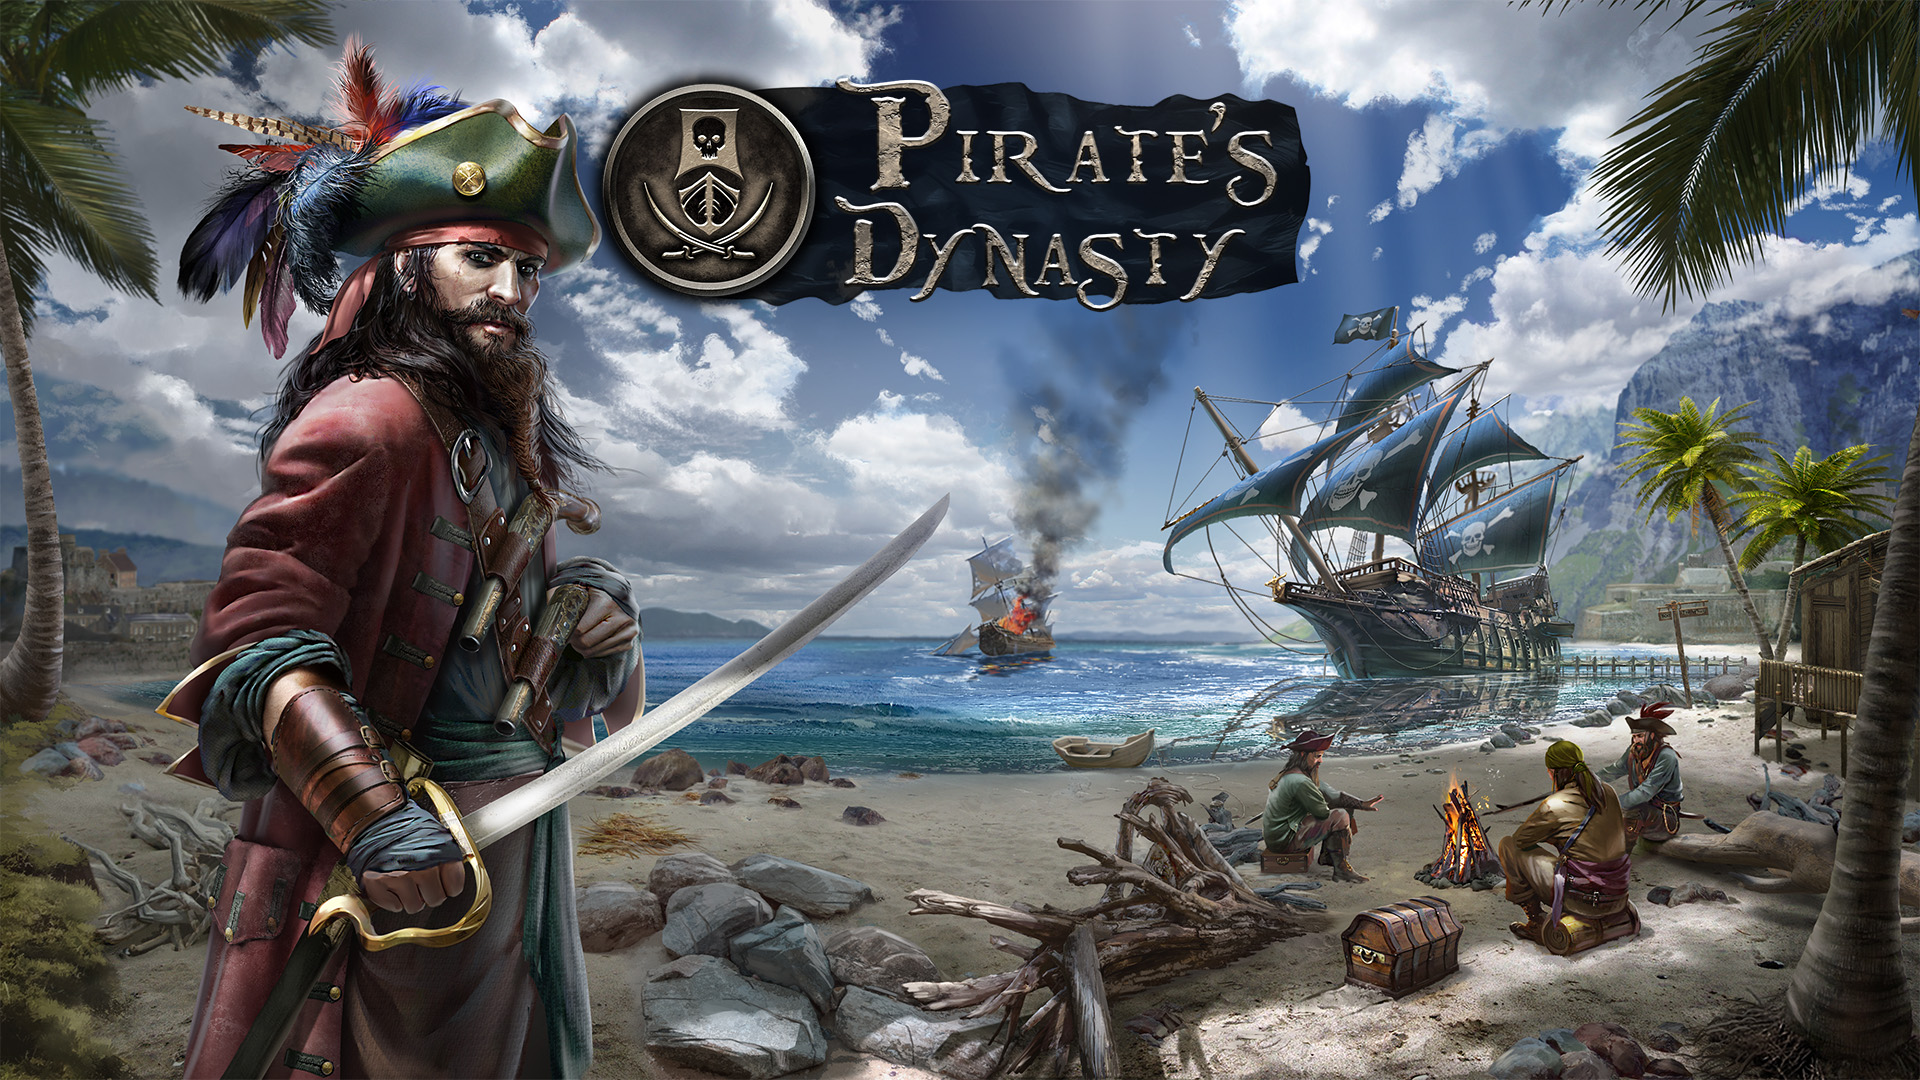 Игра пираты с открытым миром. Игры про пиратов на ПК. Pirate's Dynasty. Пираты Династия. Симулятор пирата.